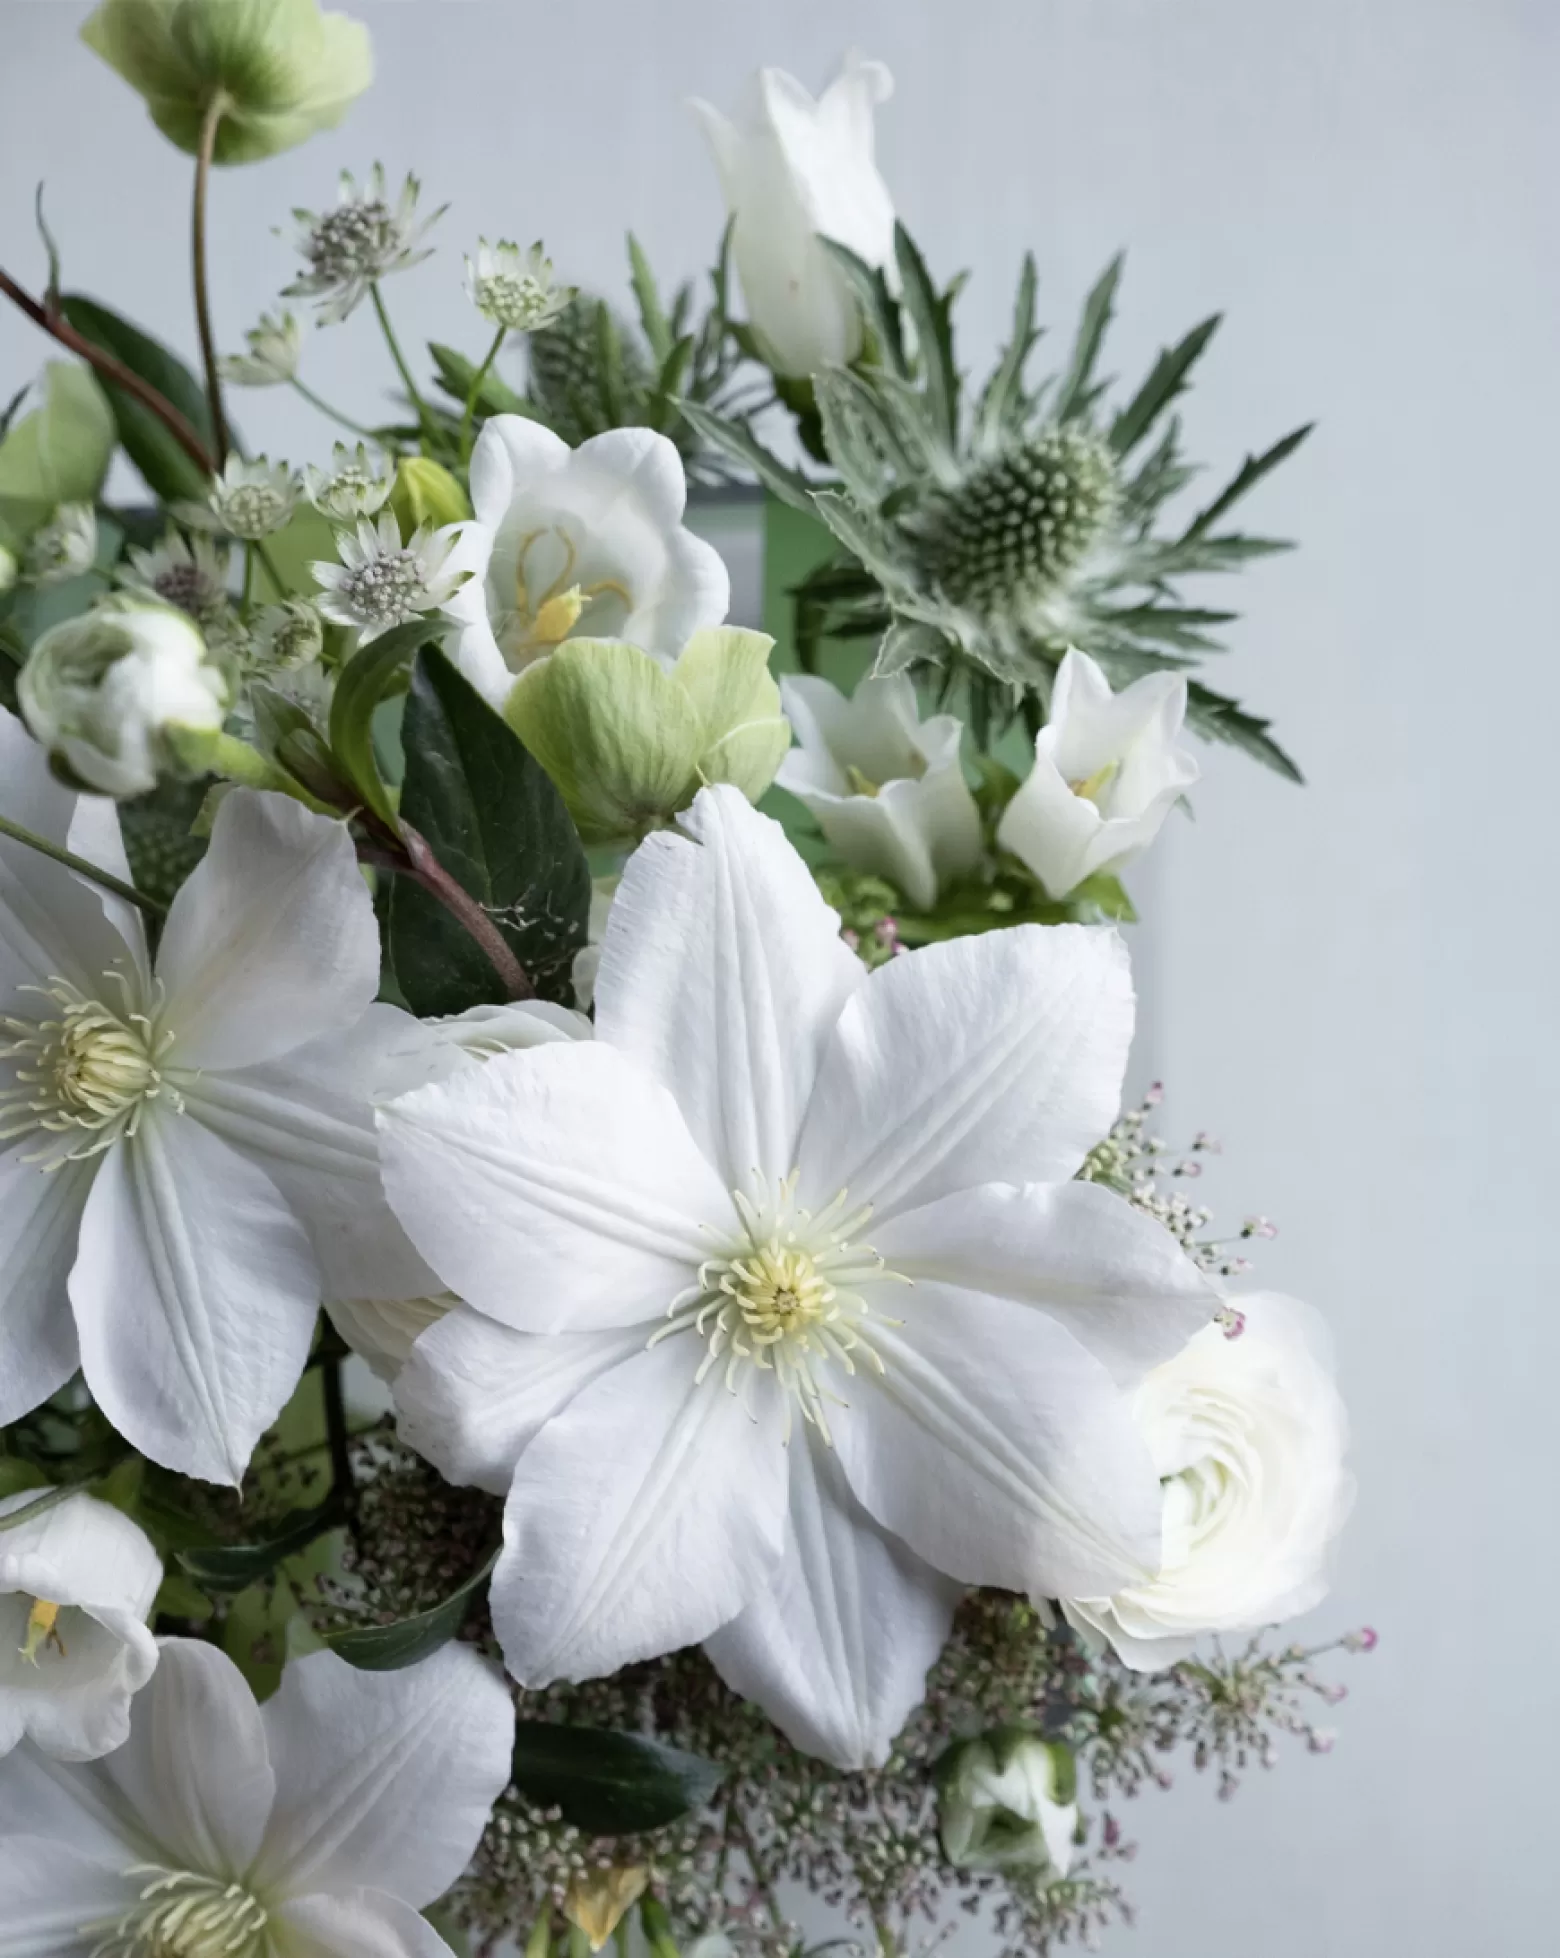 Campanula cut flower Champion White Marginpar